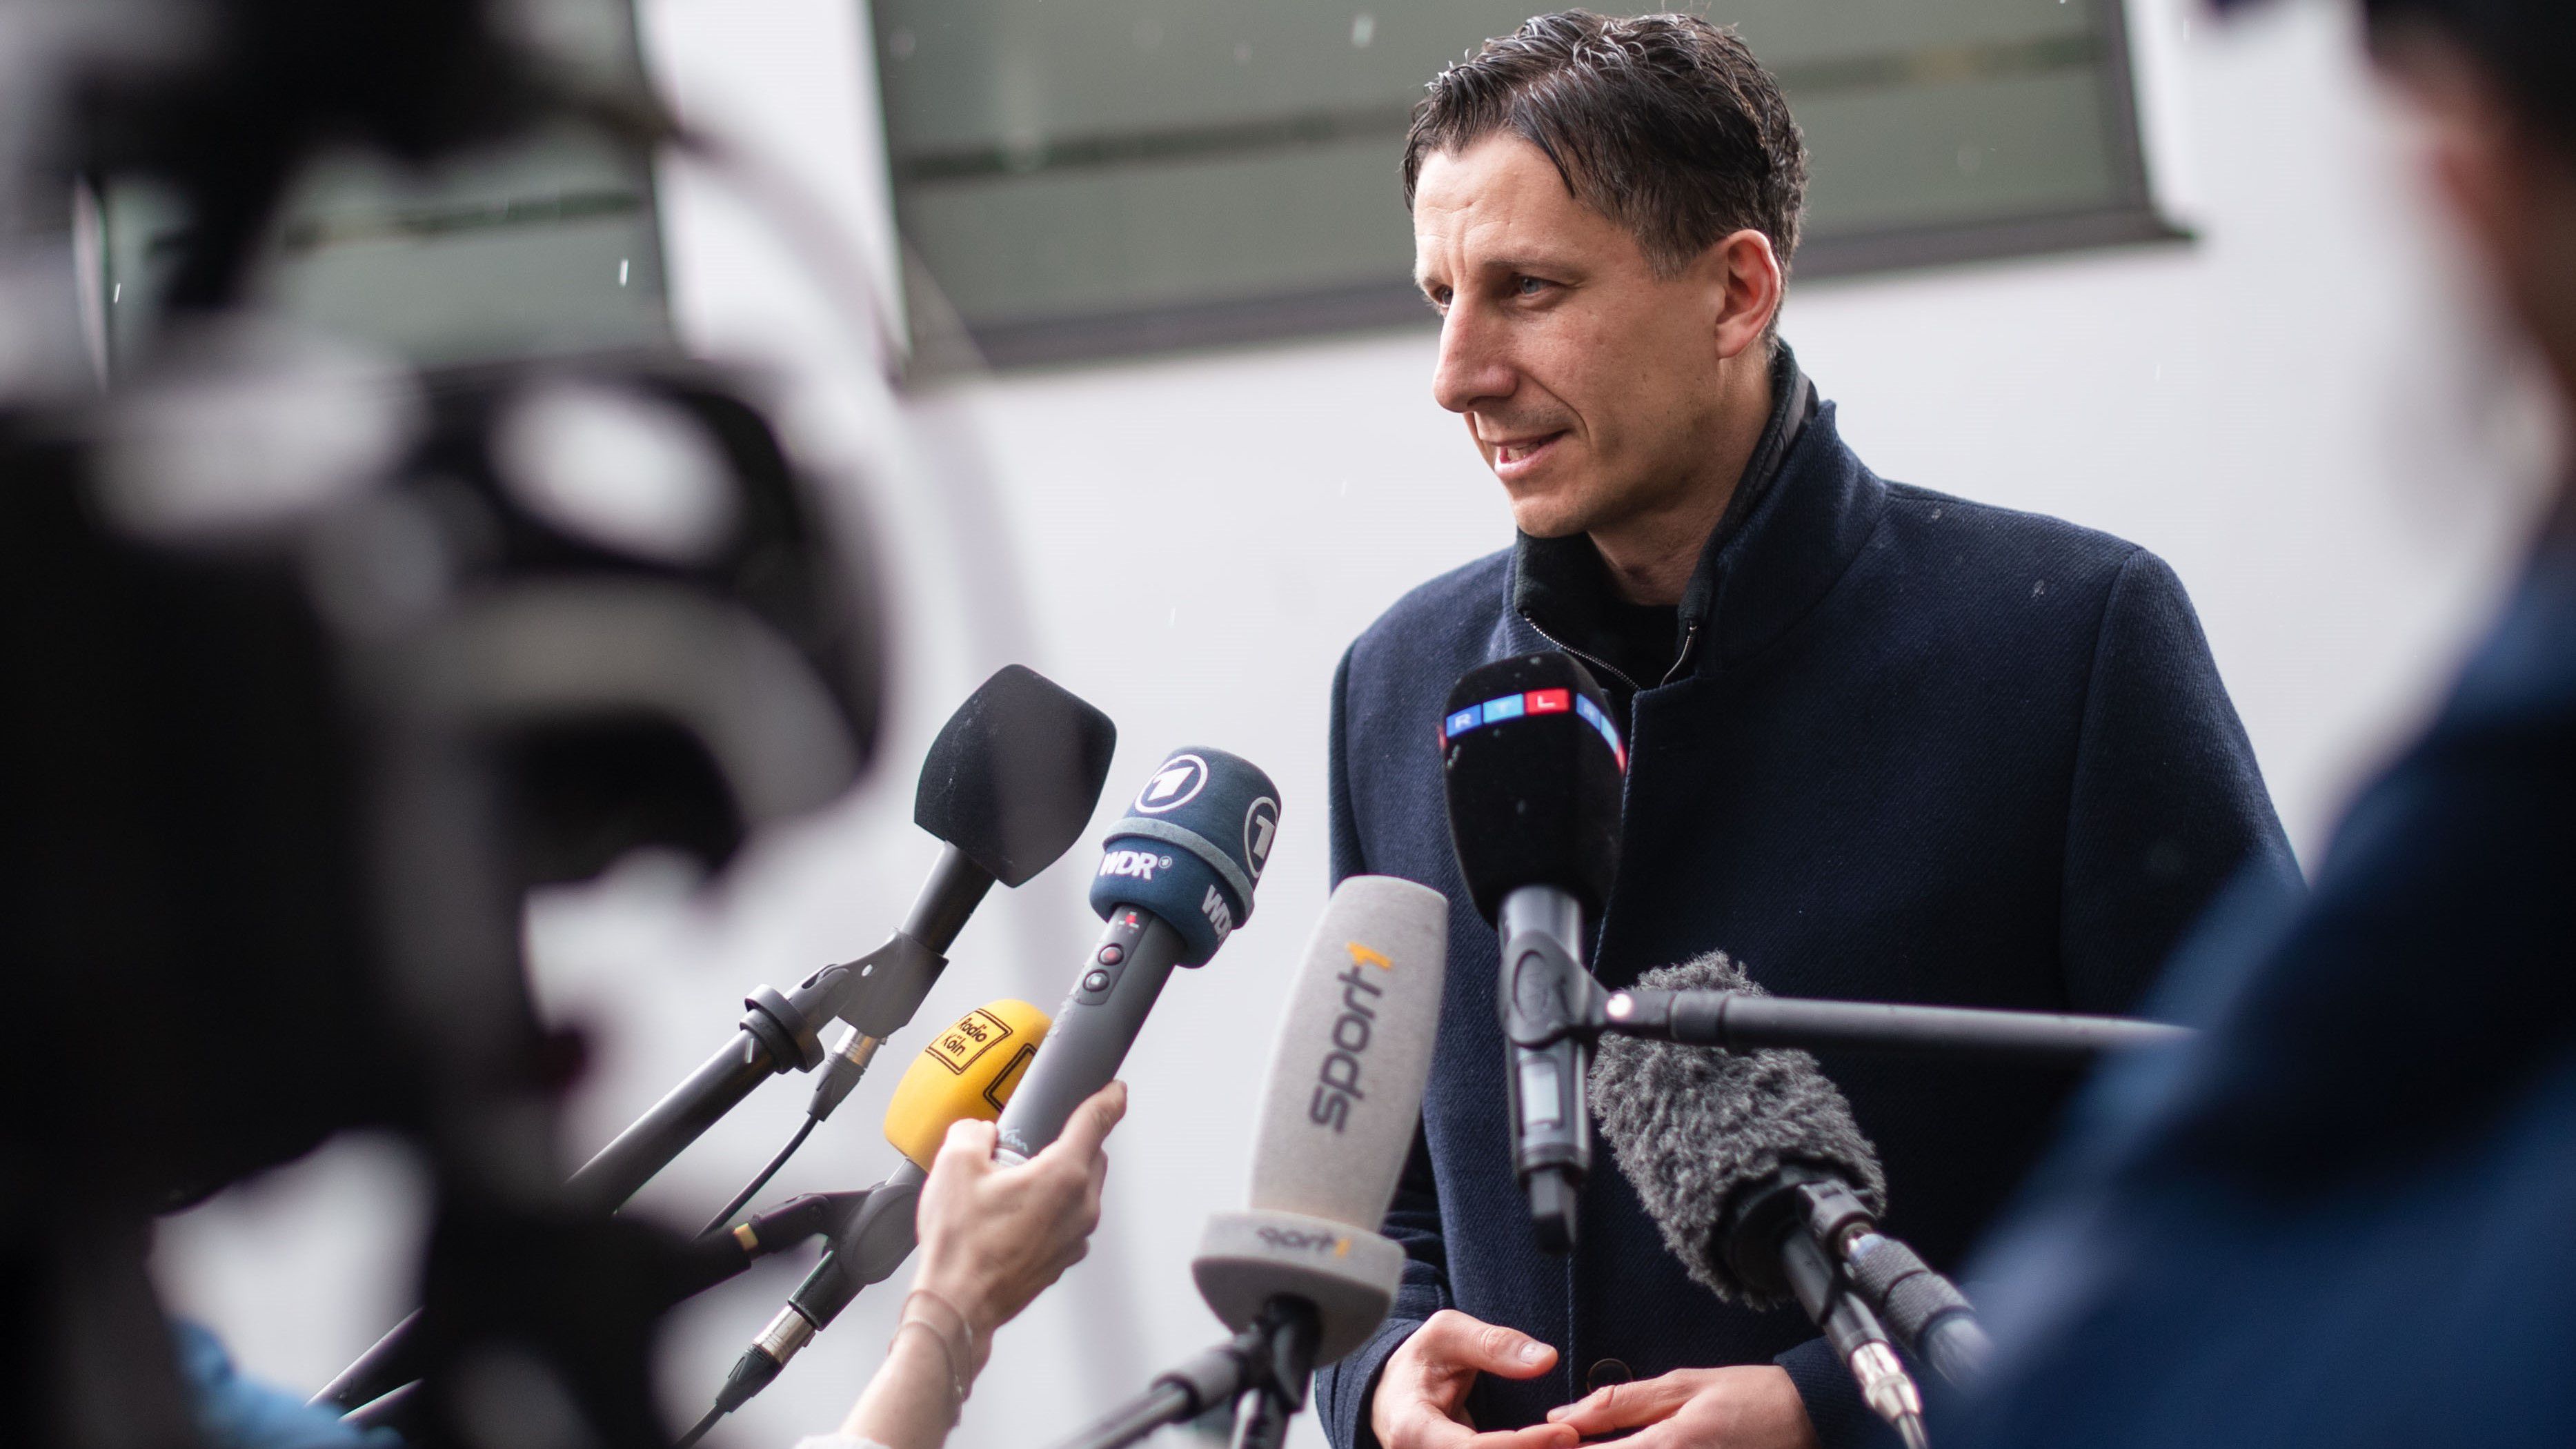 Christian Keller, az 1. FC Köln ügyvezető igazgatója sajtótájékoztatón jelentette be, a CAS-hoz fordulnak a kizárás miatt (Fotó: Getty Images)